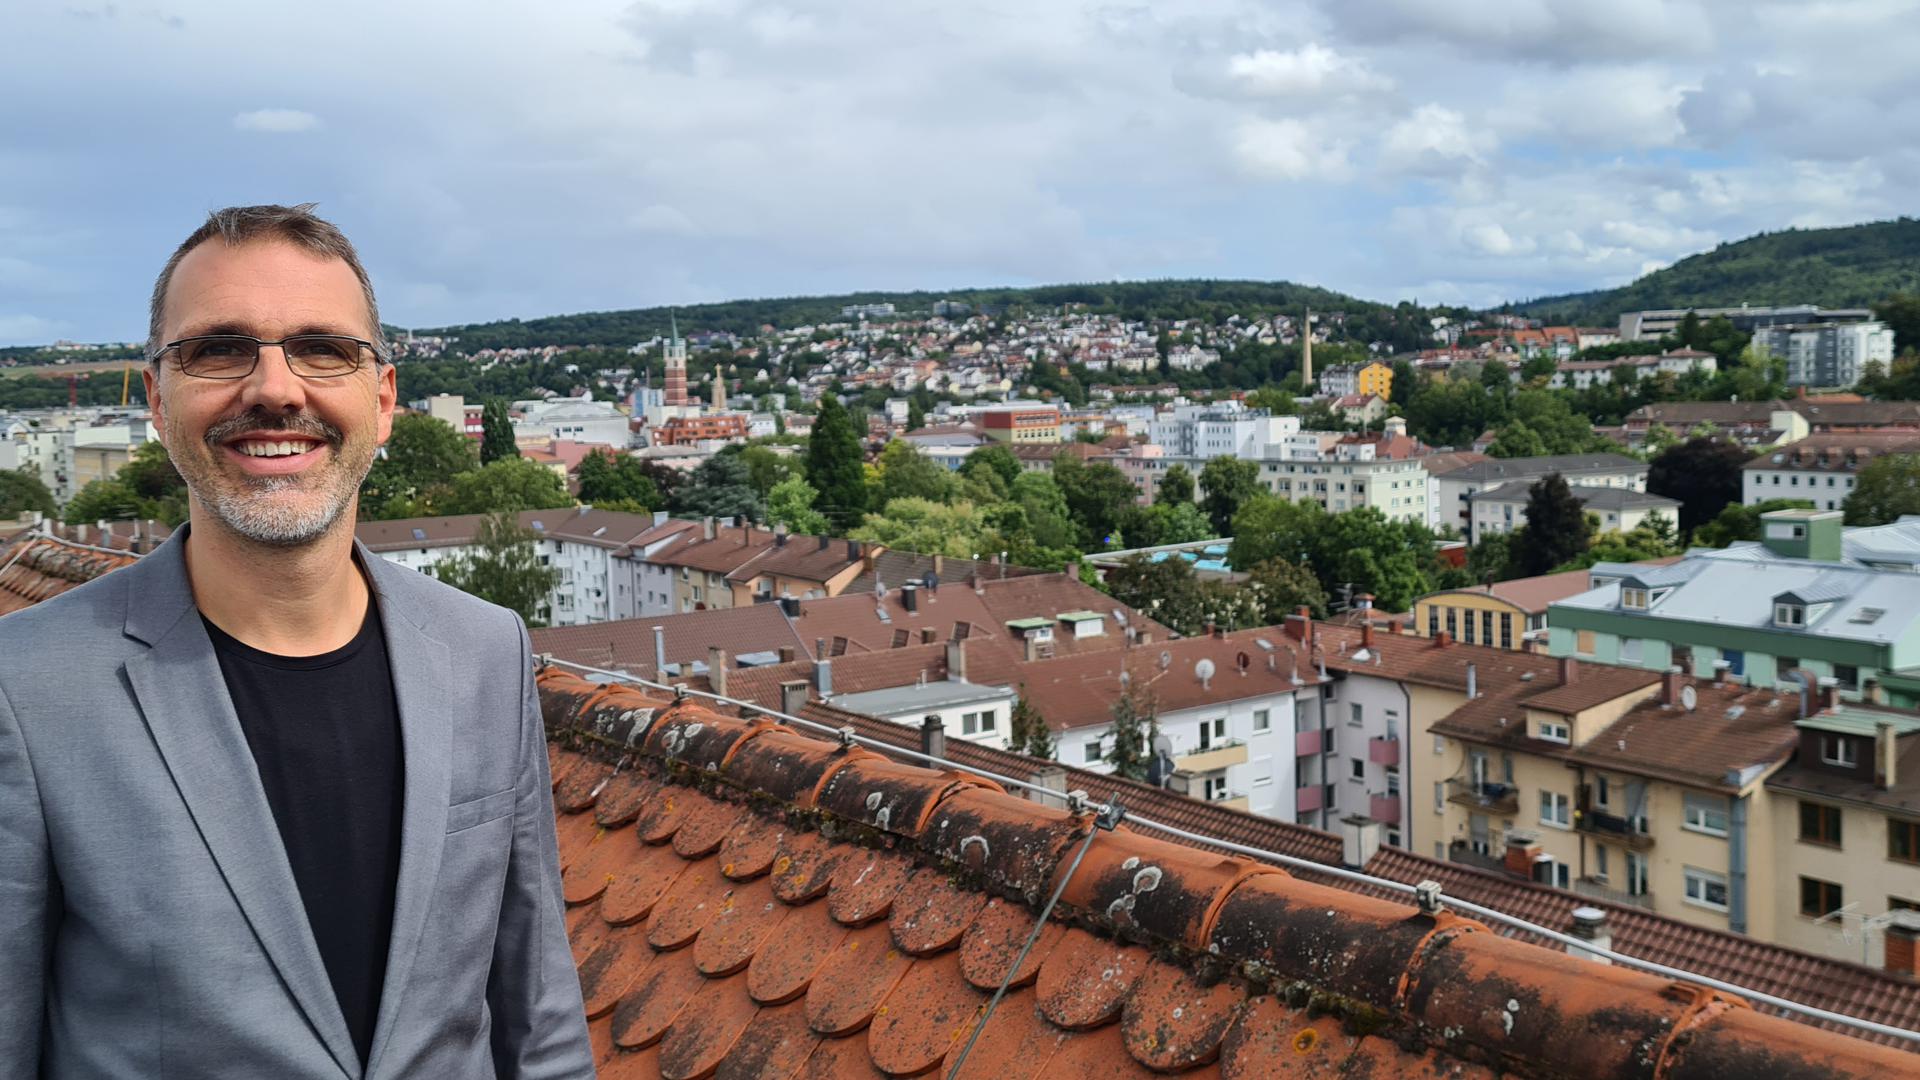 Der Leiter des Kulturhauses Osterfeld, Paul Taube, genießt die Weite und die Möglichkeit des Perspektivenwechsels auf dem Dach des Kulturhauses. 